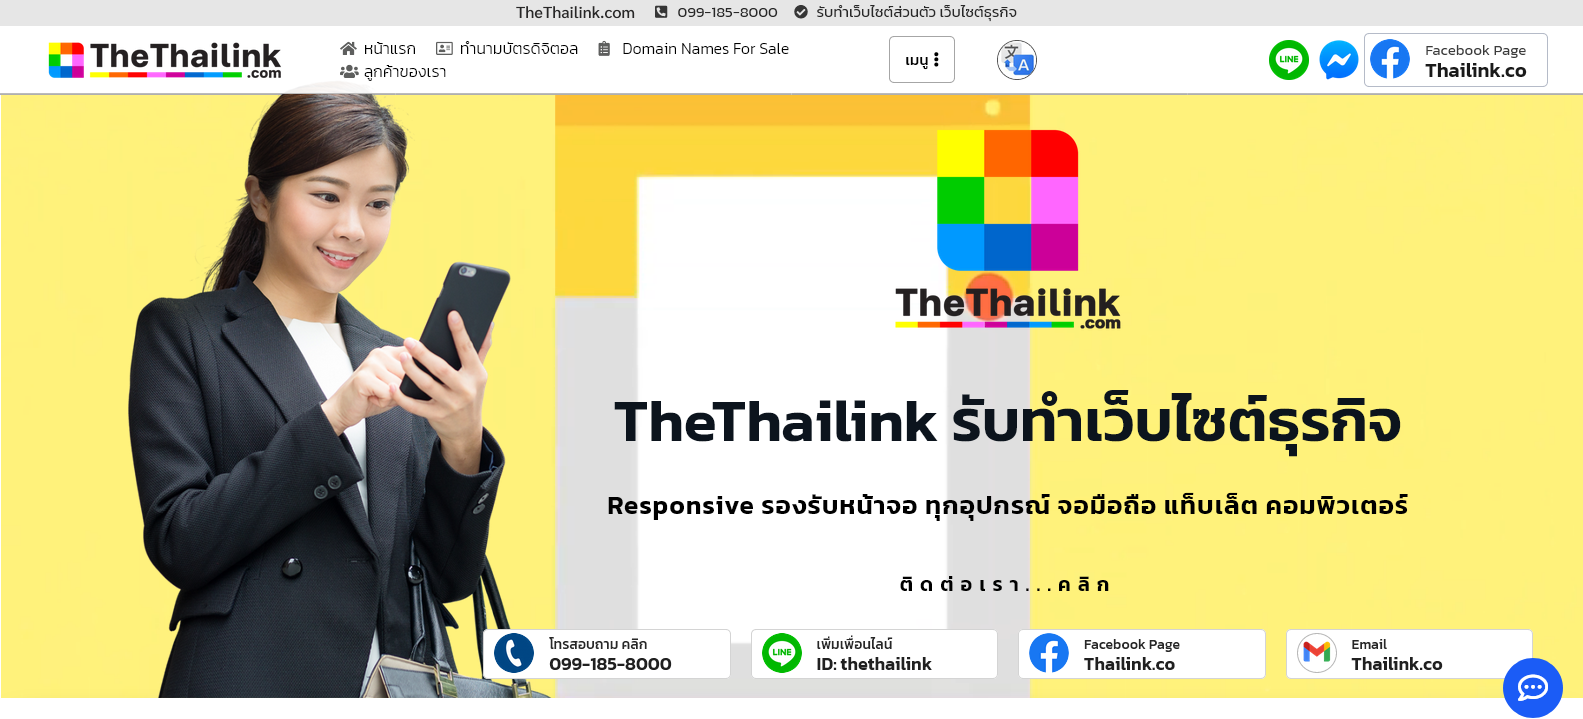 TheThailink บริการรับทำเว็บไซต์ส่วนตัว - Thethailink com (2)